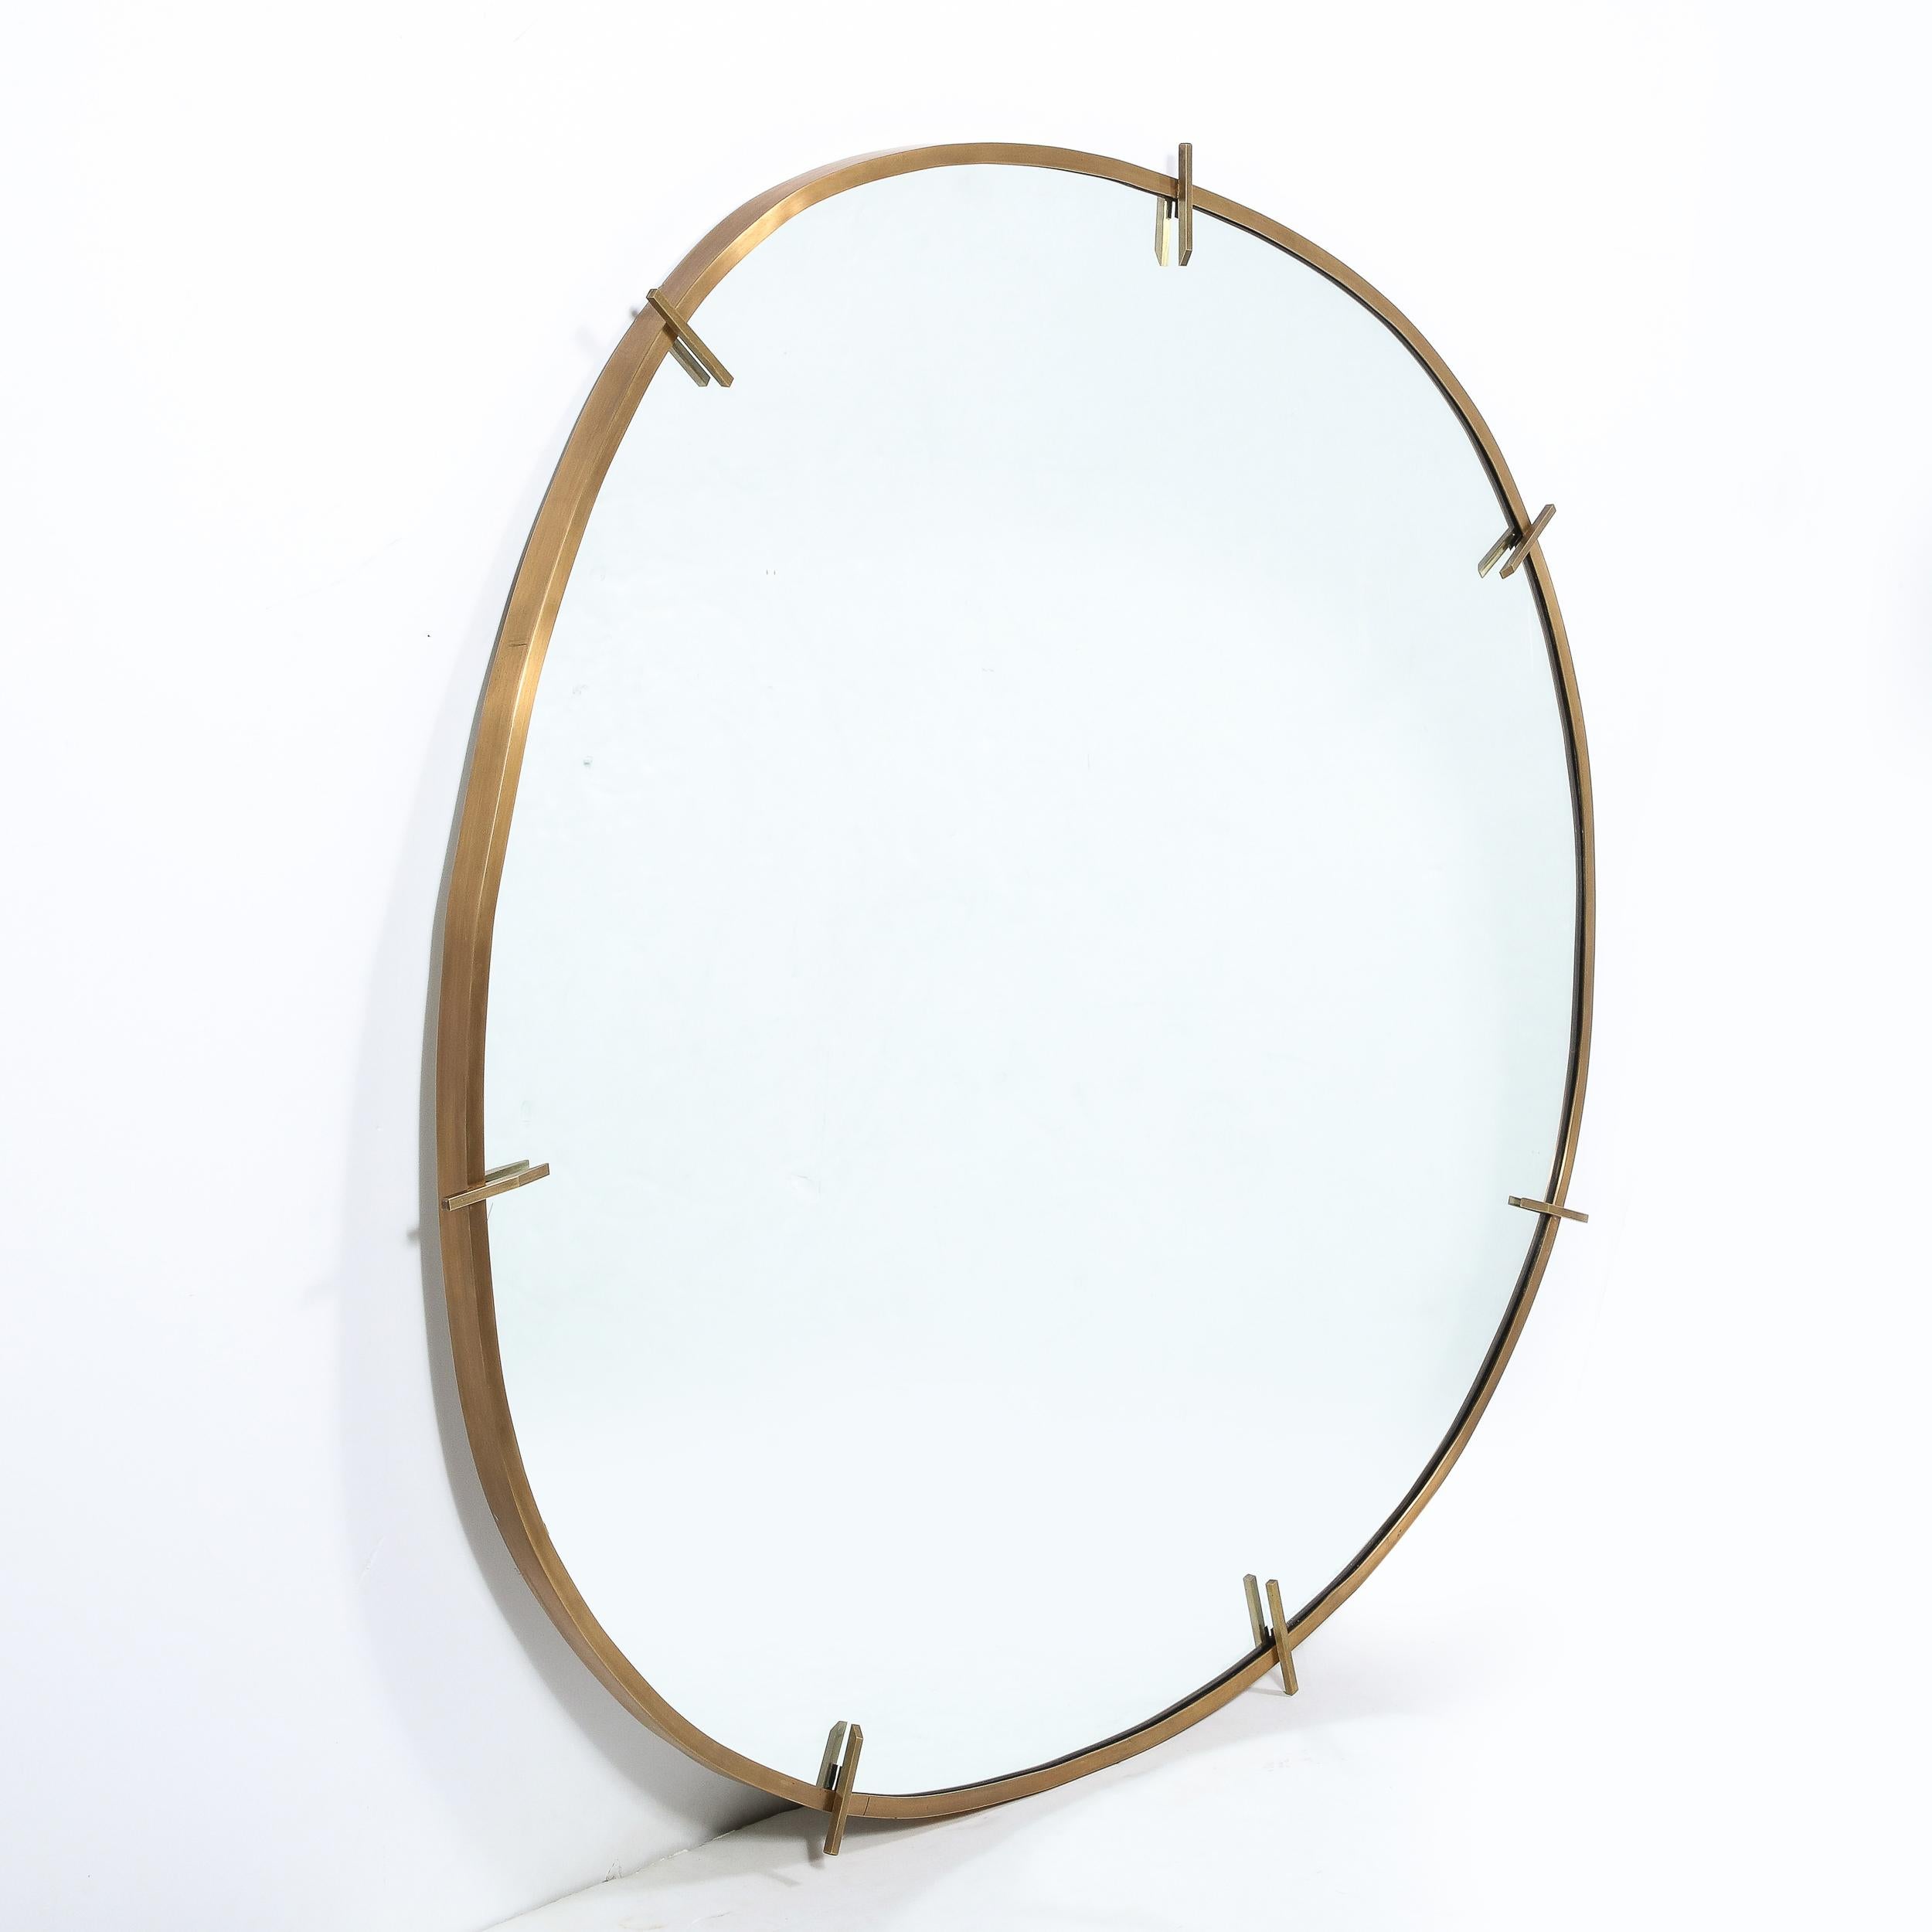 Fabriqué à la main par notre atelier exclusif, ce miroir raffiné représente l'une des rares pièces contemporaines que nous proposons, et pour cause. Il incarne le savoir-faire artisanal et les lignes du design moderniste du milieu du siècle que nous